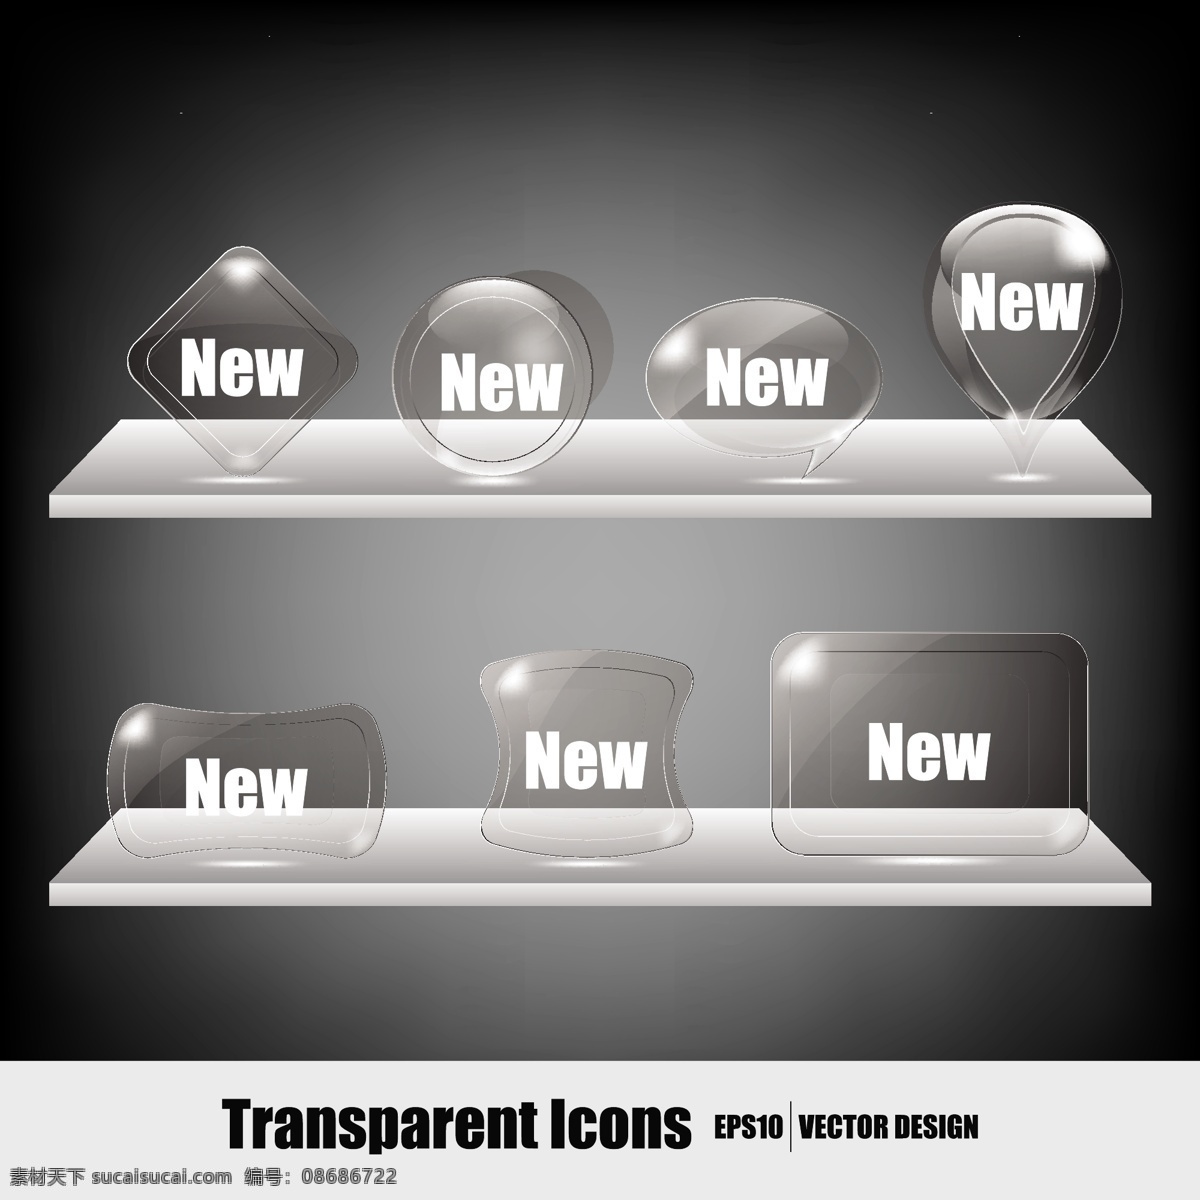 透明 水晶 图标 矢量 效果图 货舱 晶体 晶体结构 许可的新闻 新的图标 矢量图